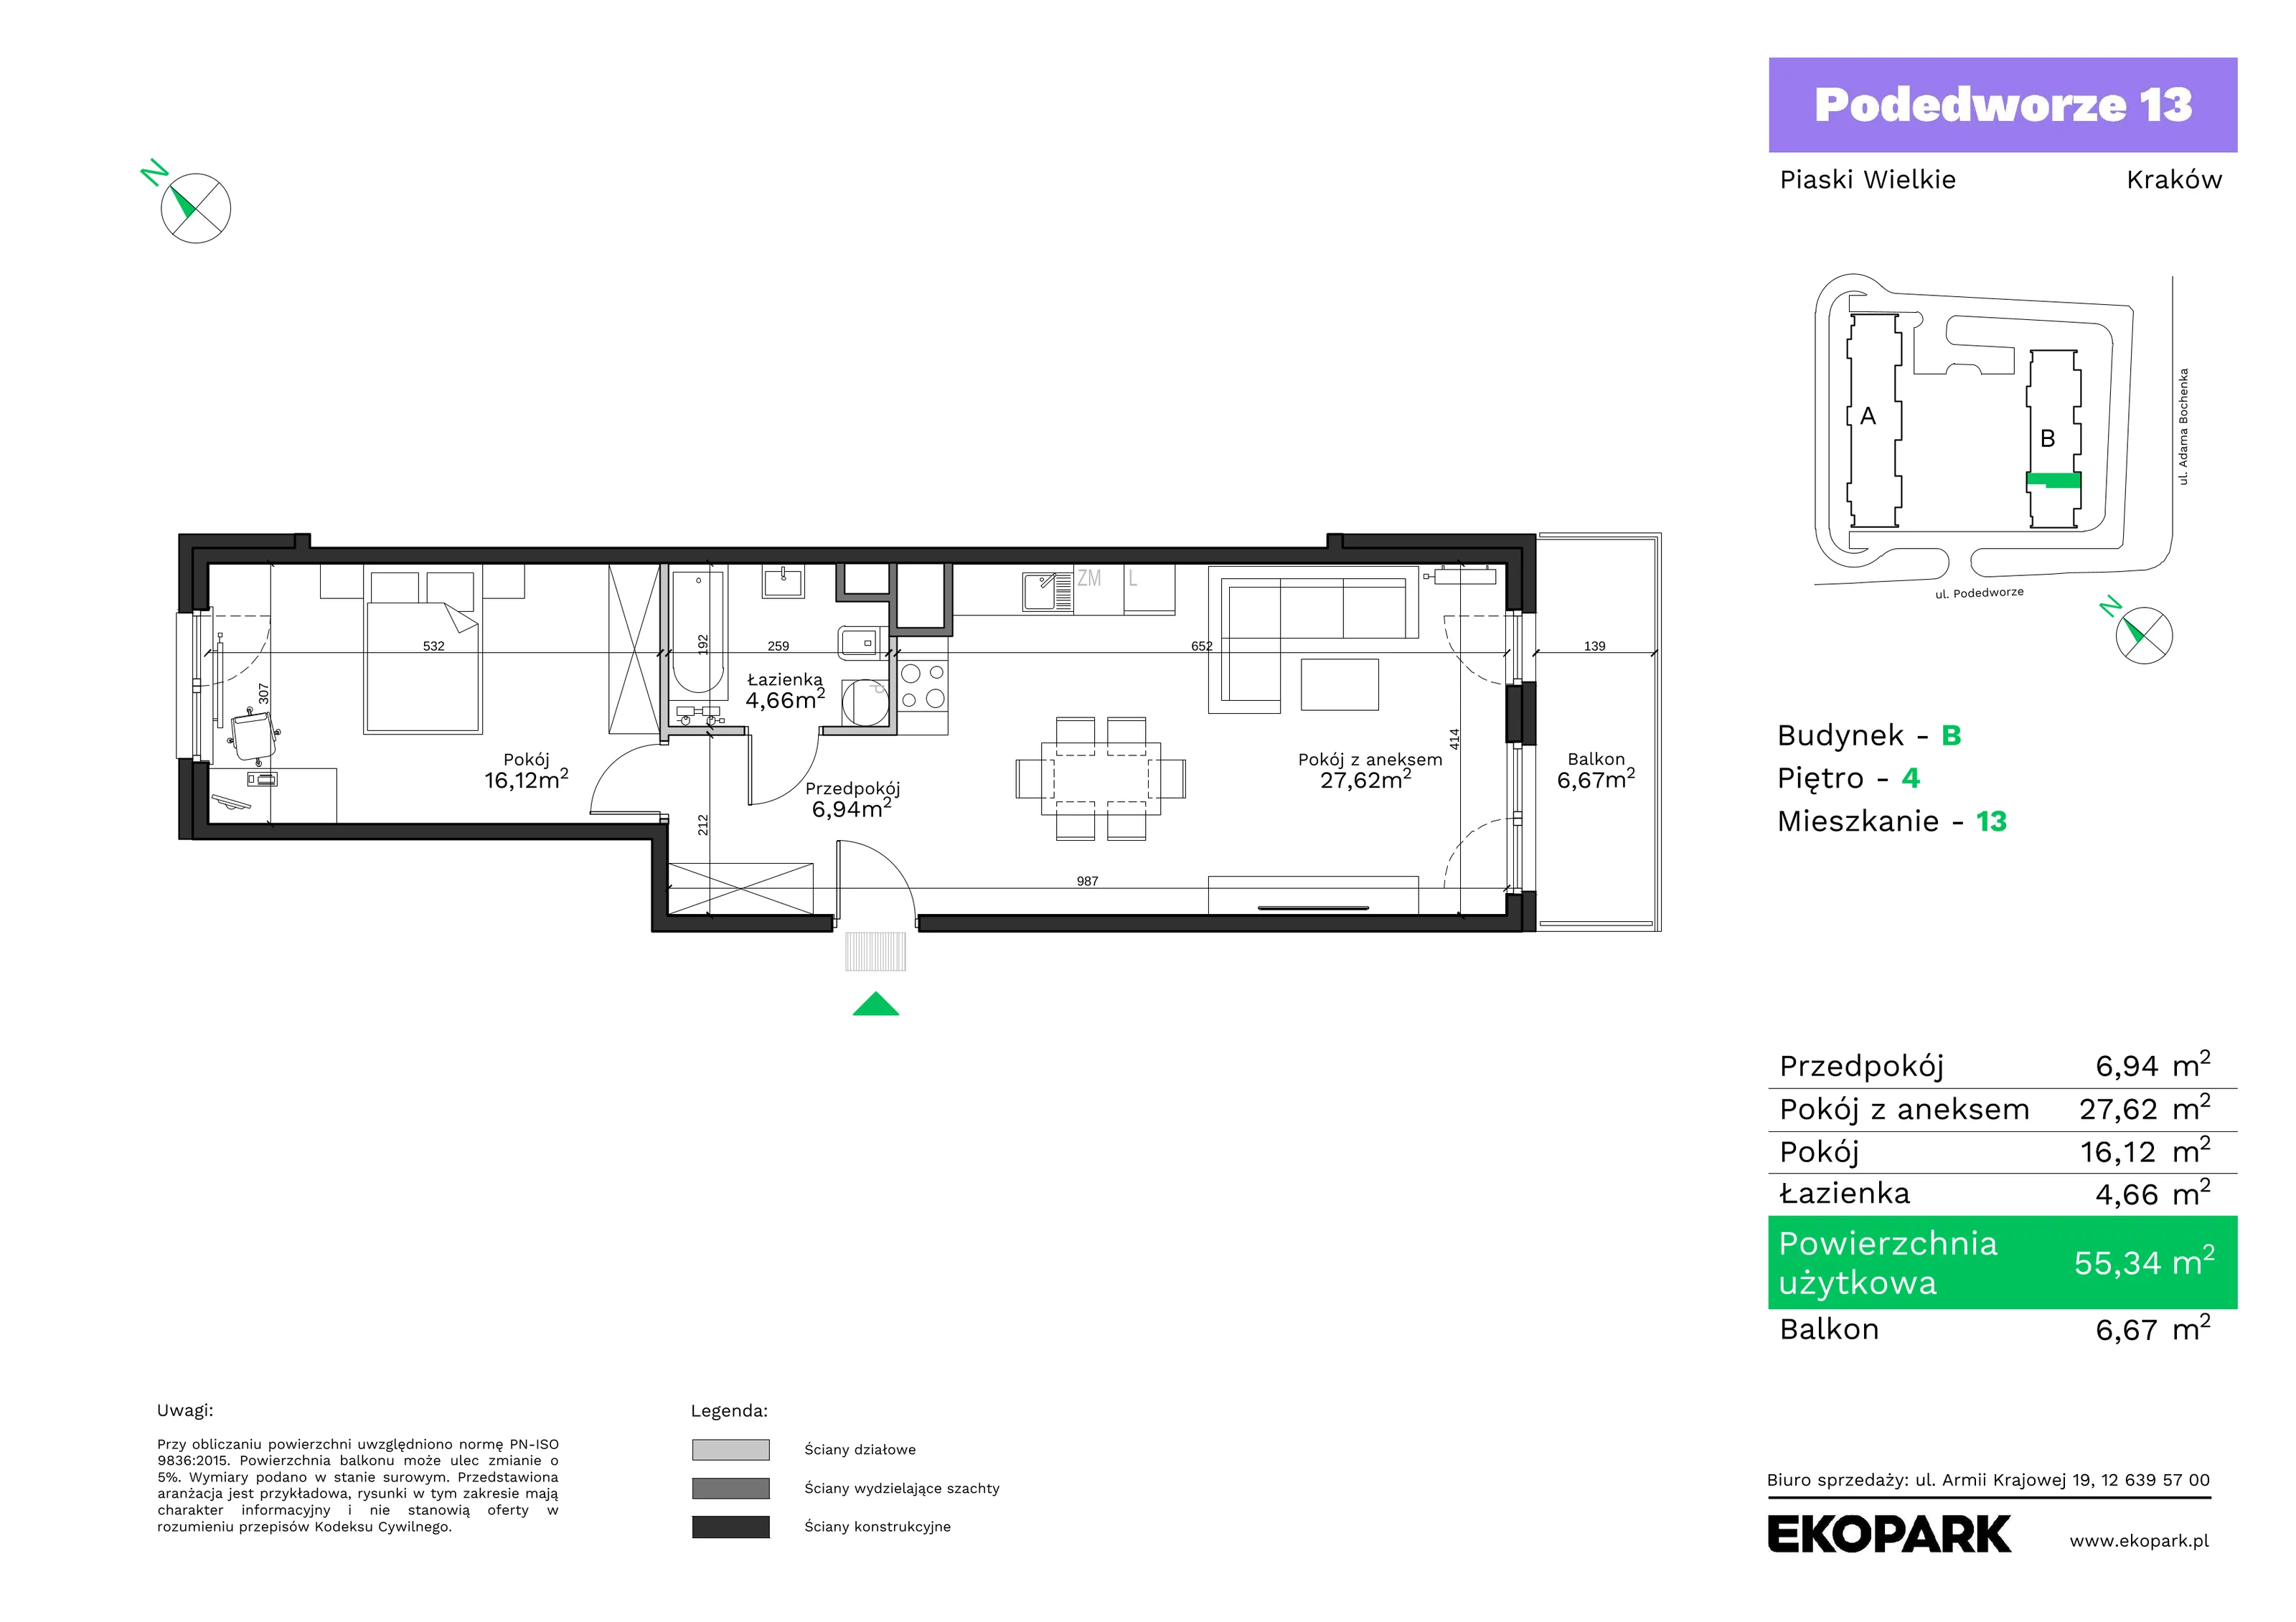 Mieszkanie 55,34 m², piętro 4, oferta nr B13, Podedworze 13, Kraków, Podgórze Duchackie, Piaski Wielkie, ul. Podedworze 13